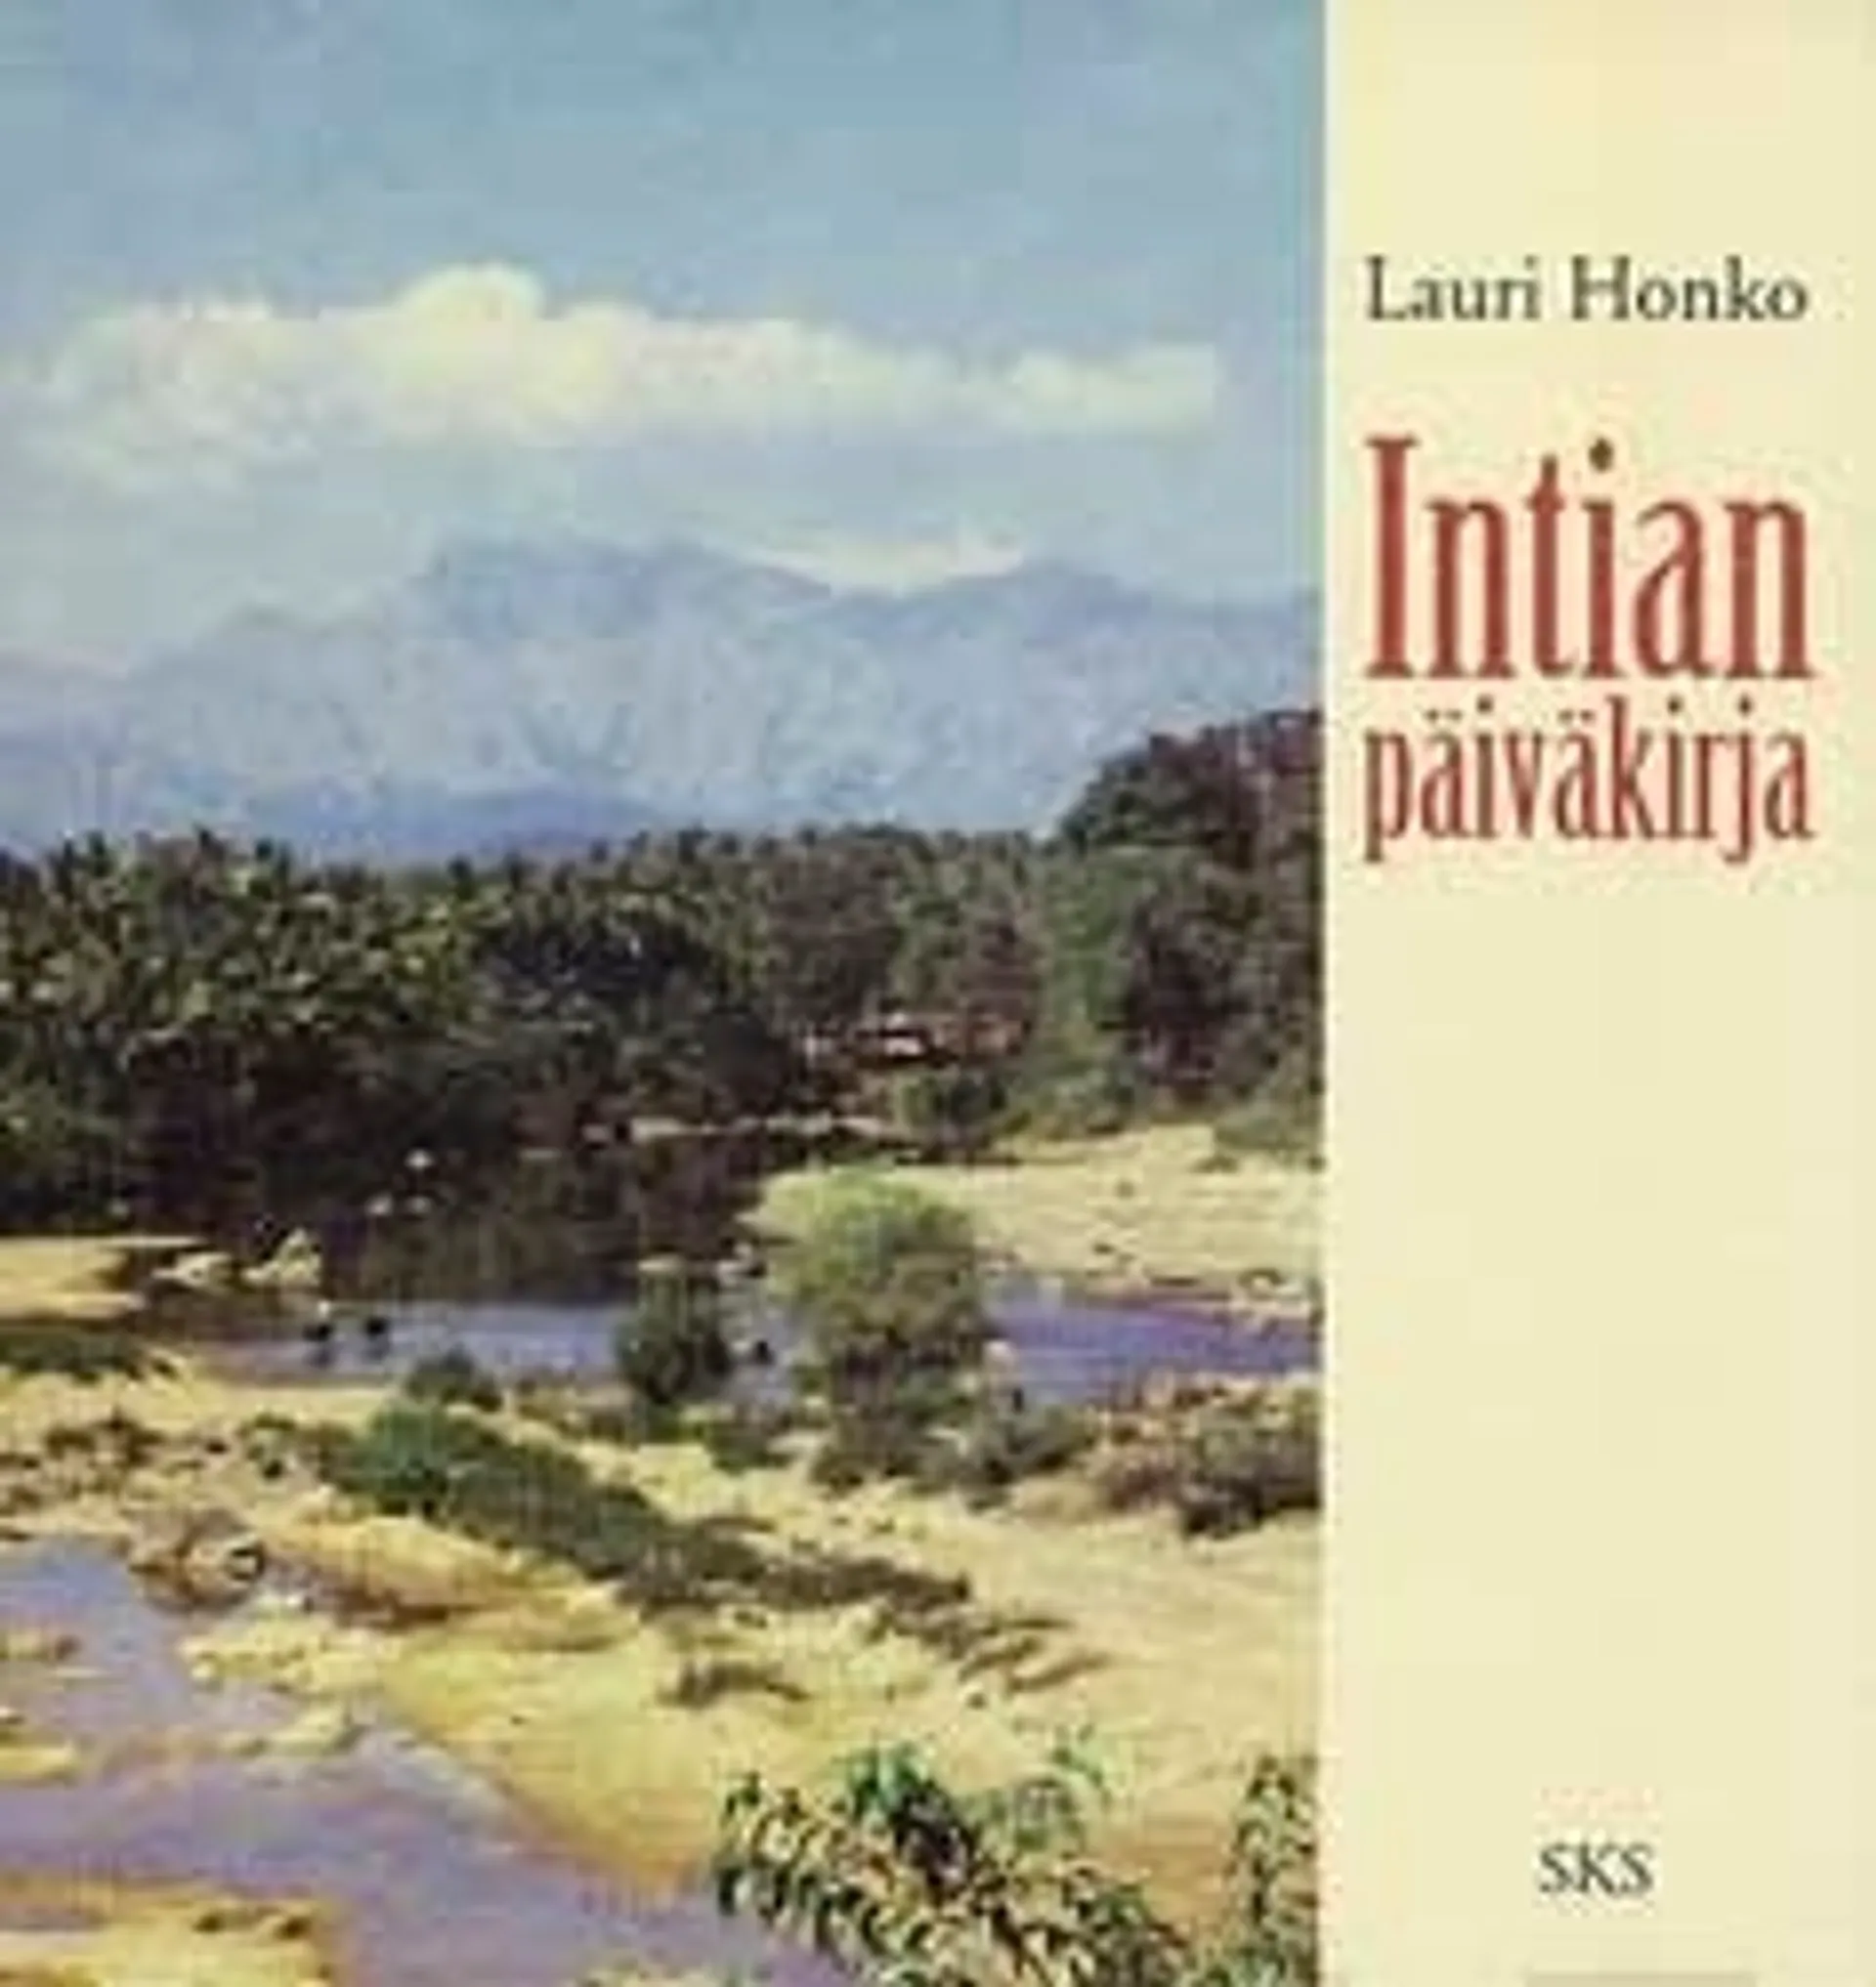 Honko, Intian päiväkirja